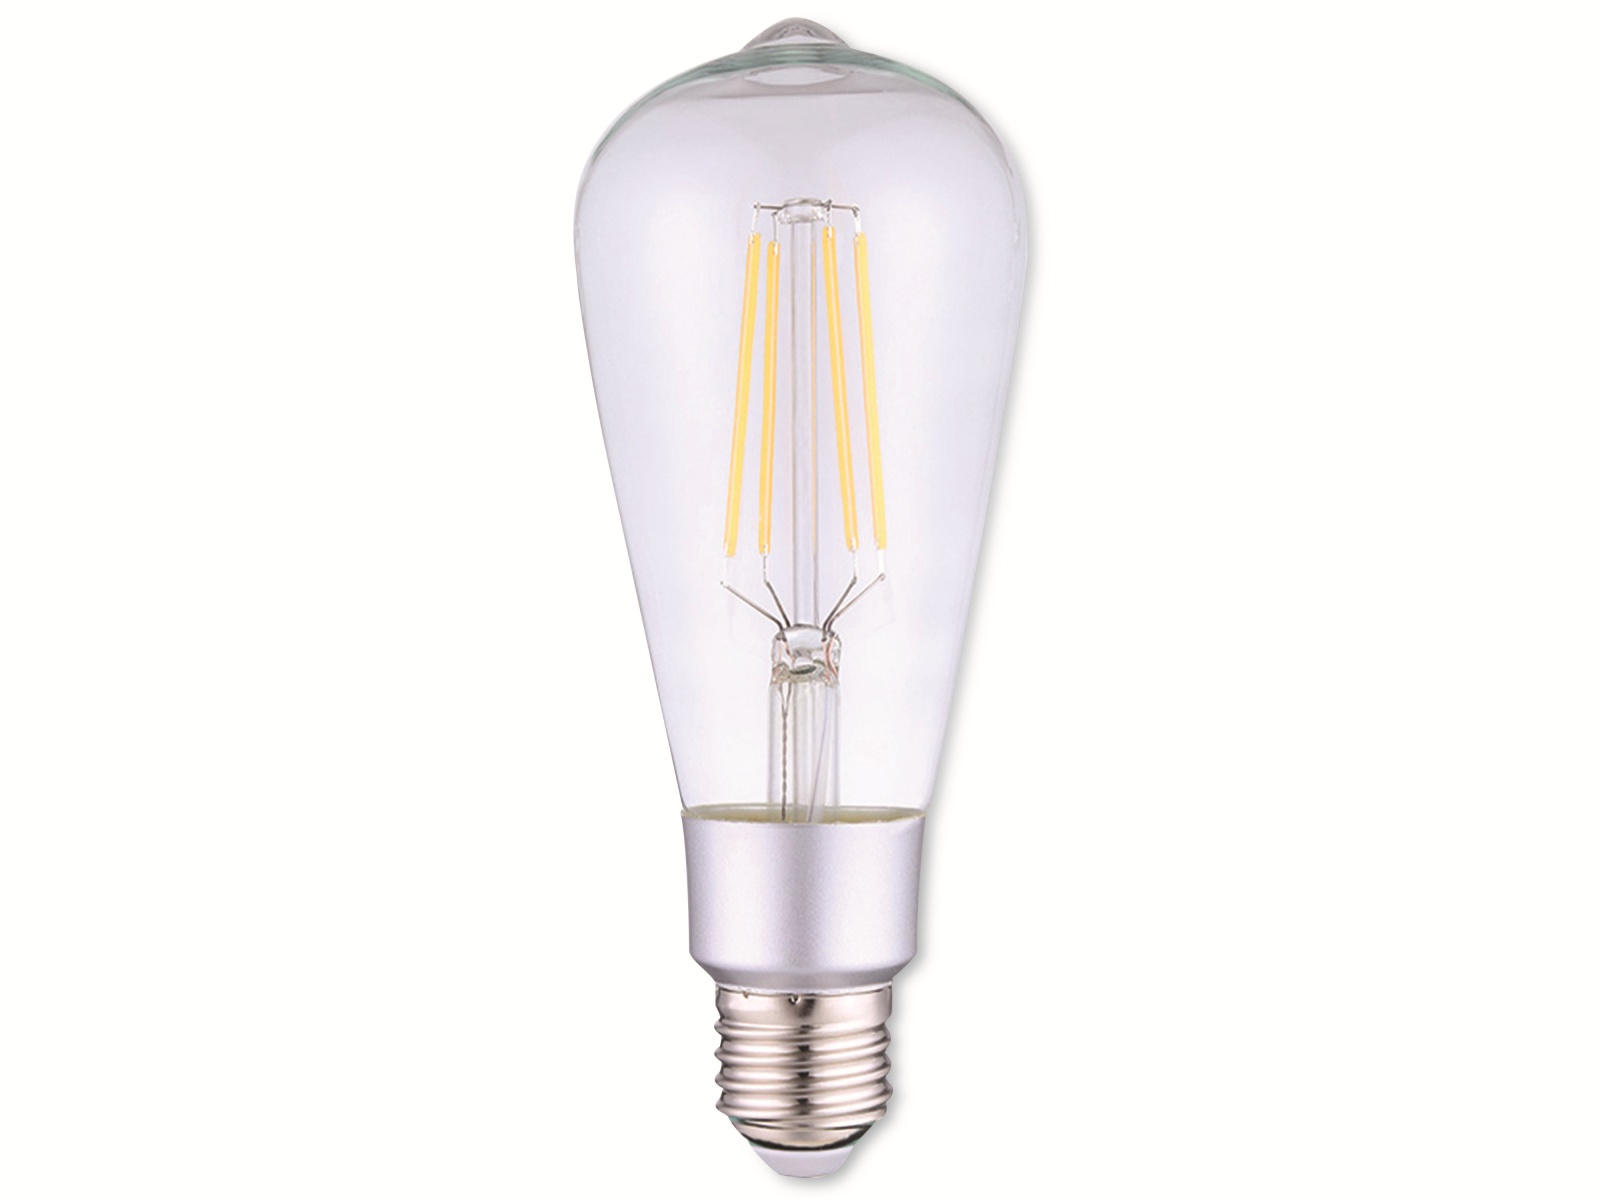 SHELLY LED-Lampe Vintage ST64, WLAN, EEK: E, E27, 7 W, 800 lm, dimmbar